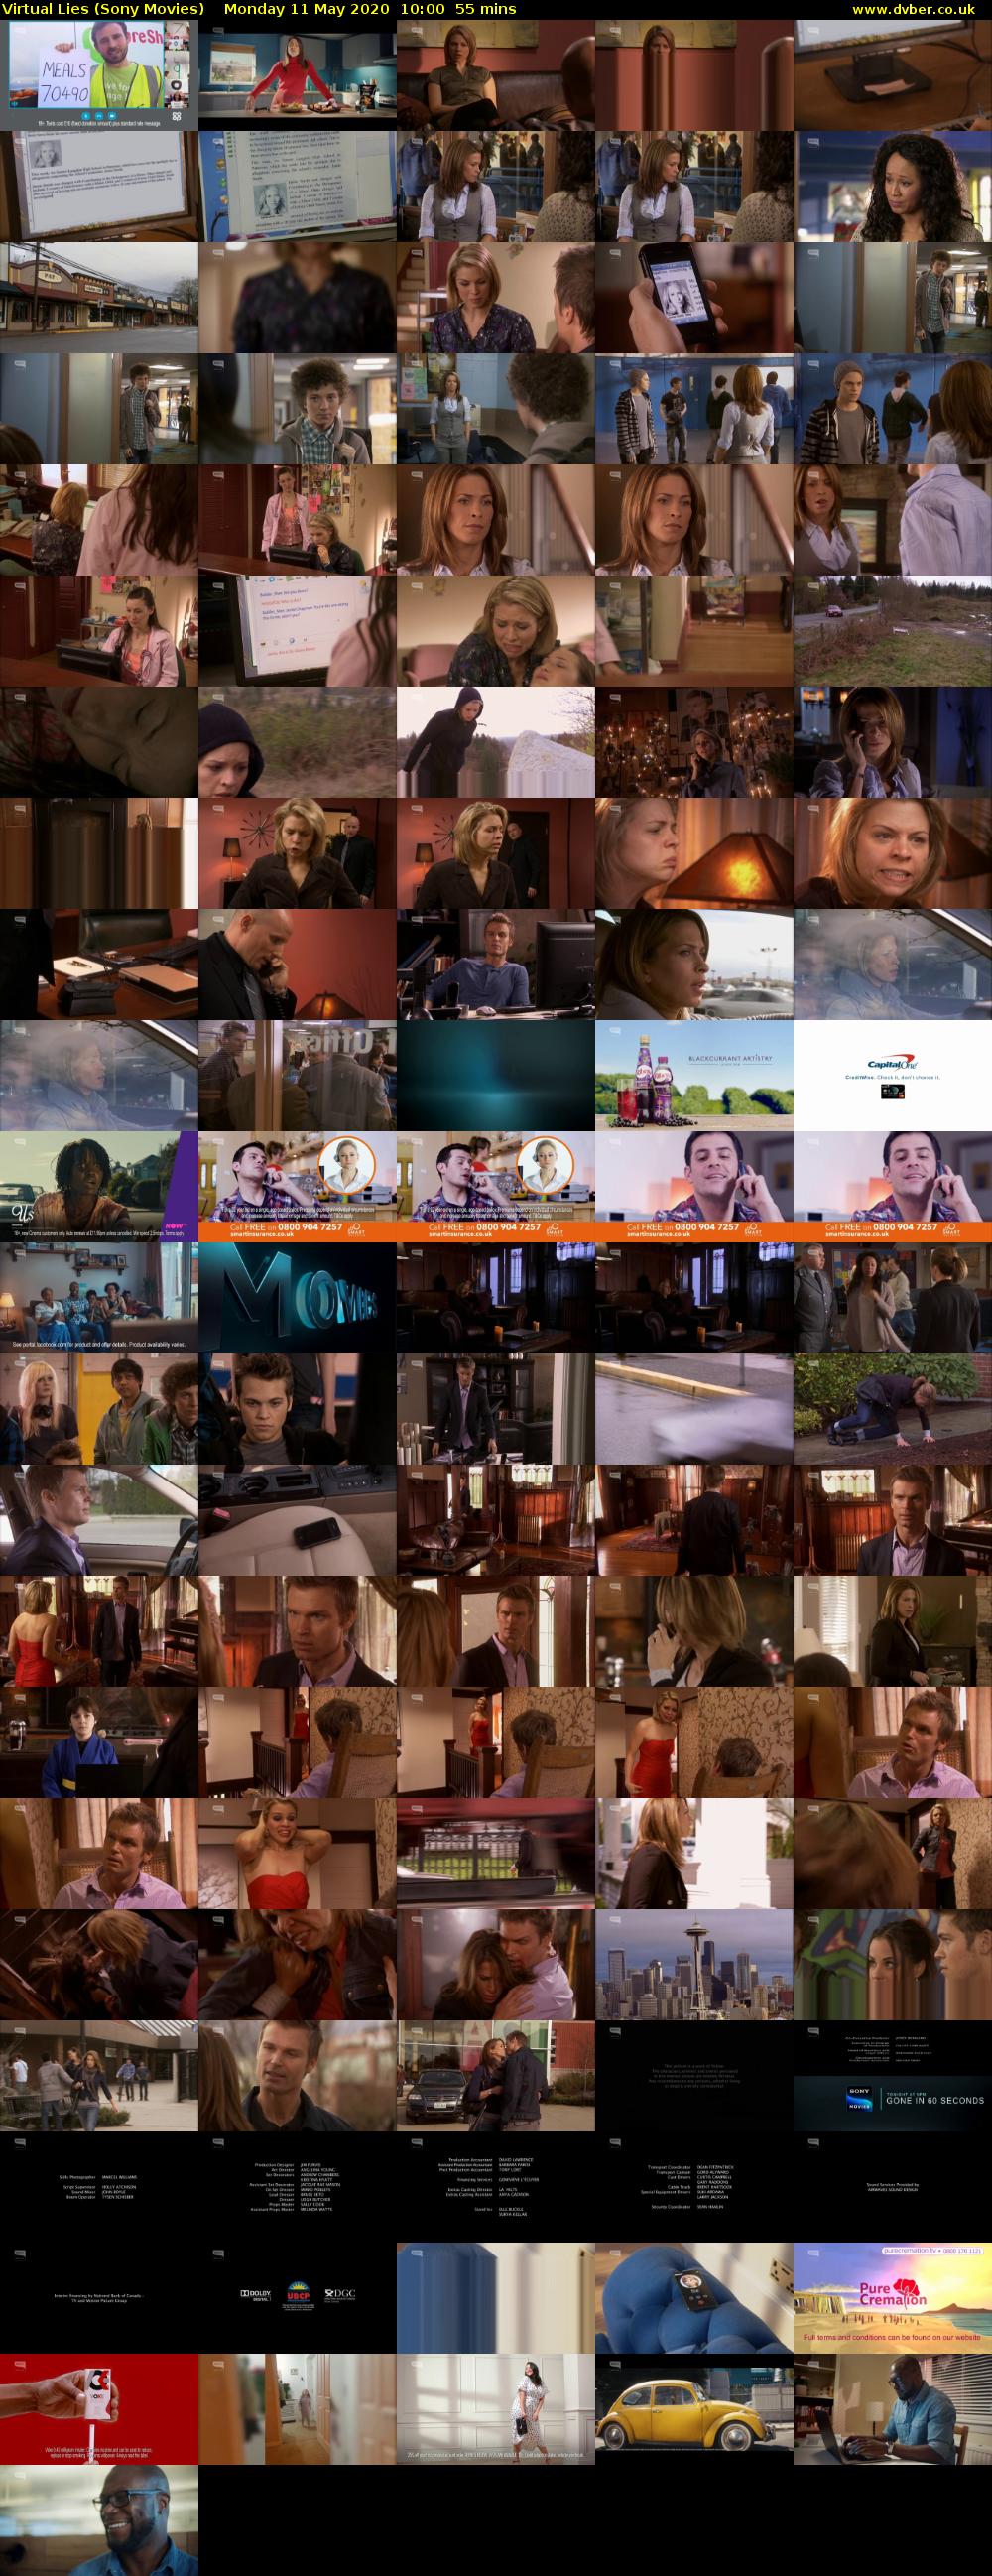 Virtual Lies (Sony Movies) Monday 11 May 2020 10:00 - 10:55